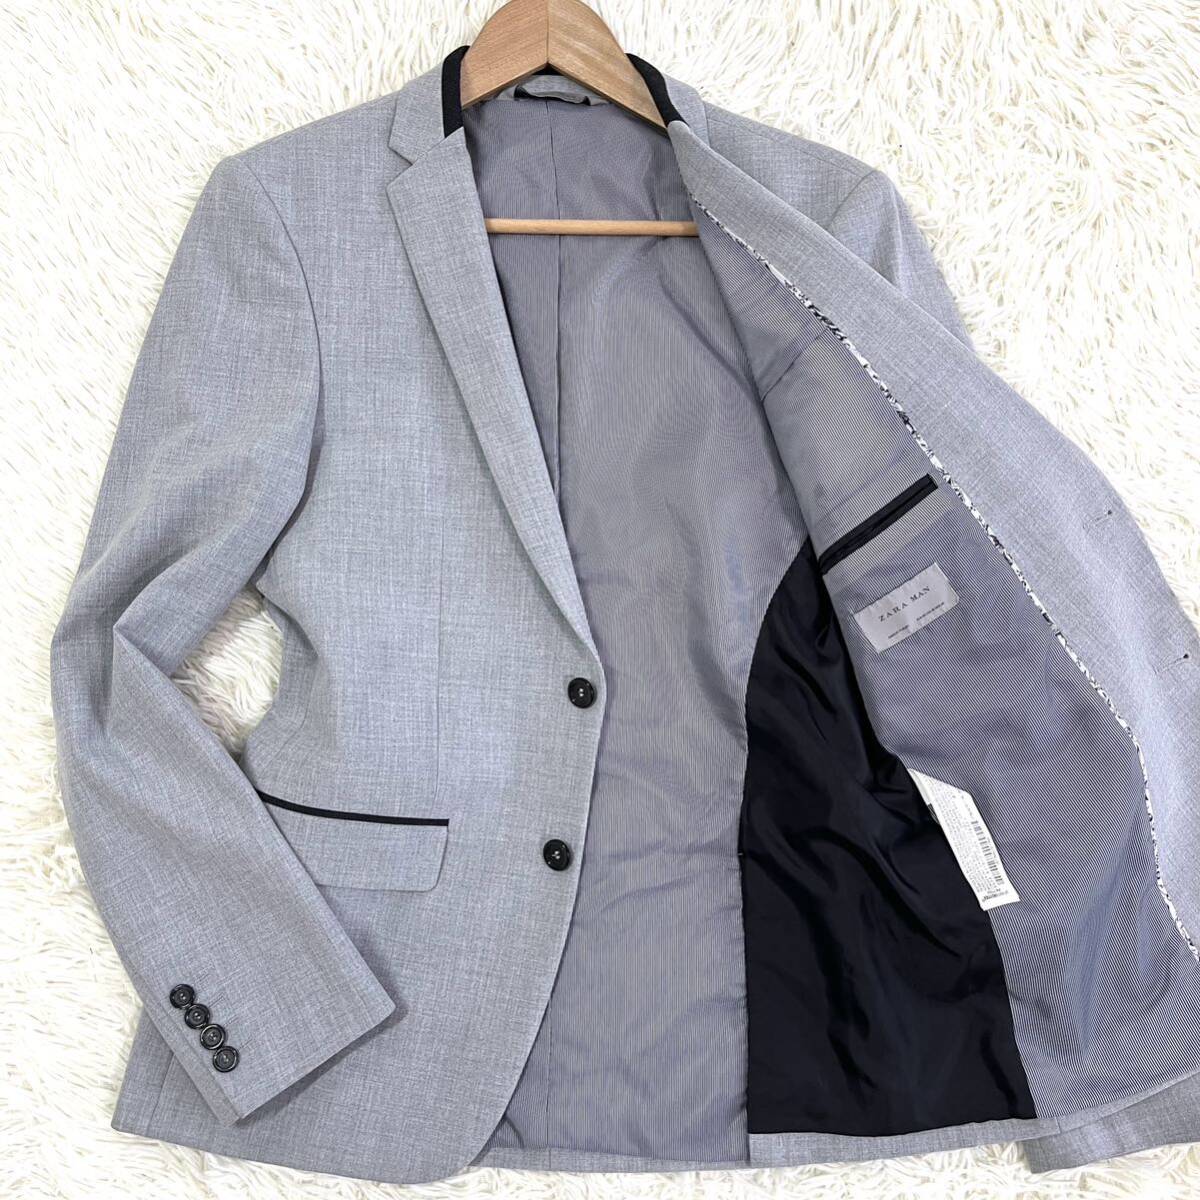  The лама n[.. выпадение . освежение .!] tailored jacket серый 2B цветочный принт центральный отдушина весна лето размер M ZARA MAN